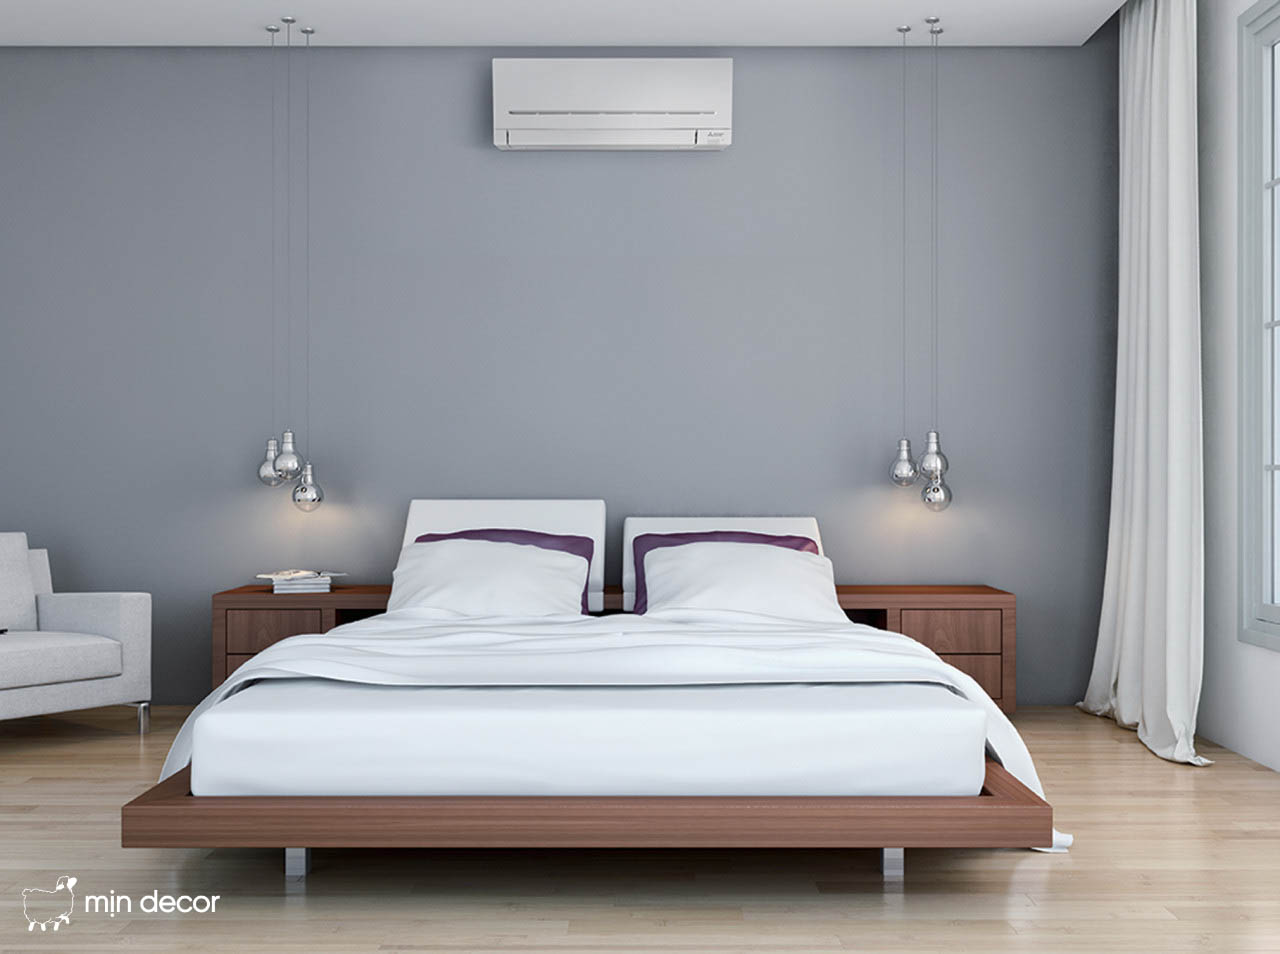 Hướng dẫn lắp máy điều hòa ở vị trí nào trong phòng ngủ để an toàn sức khỏe và hợp phong thủy